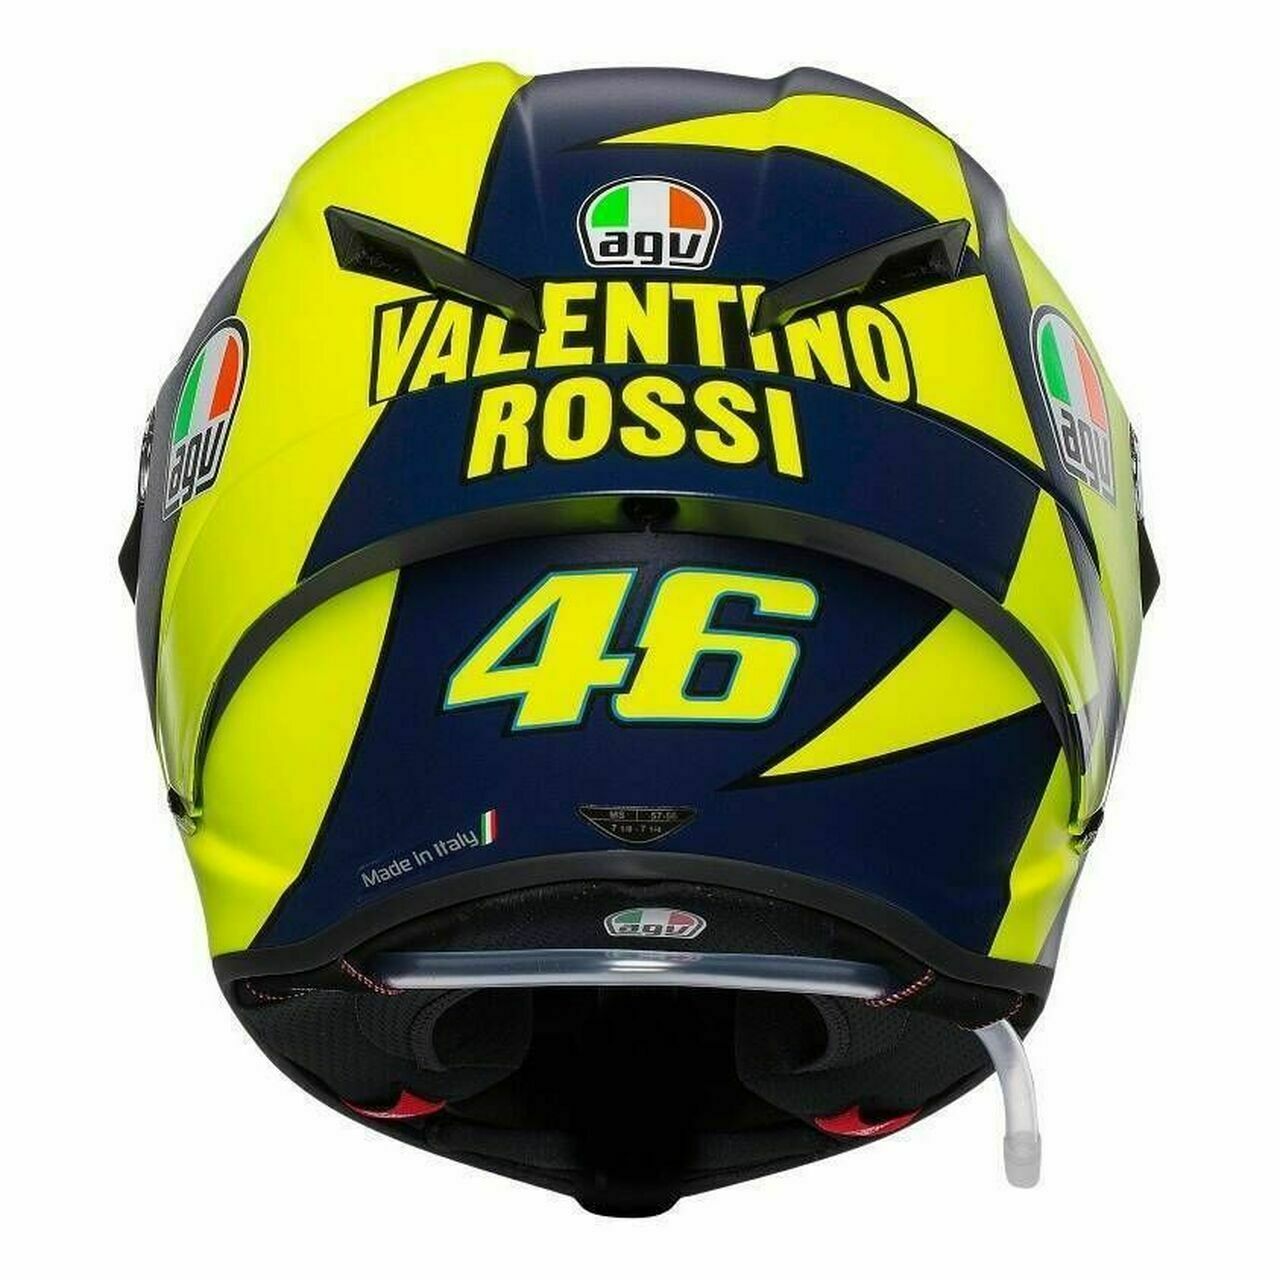 AGV Pista GP RR Helmet - Soleluna 2019